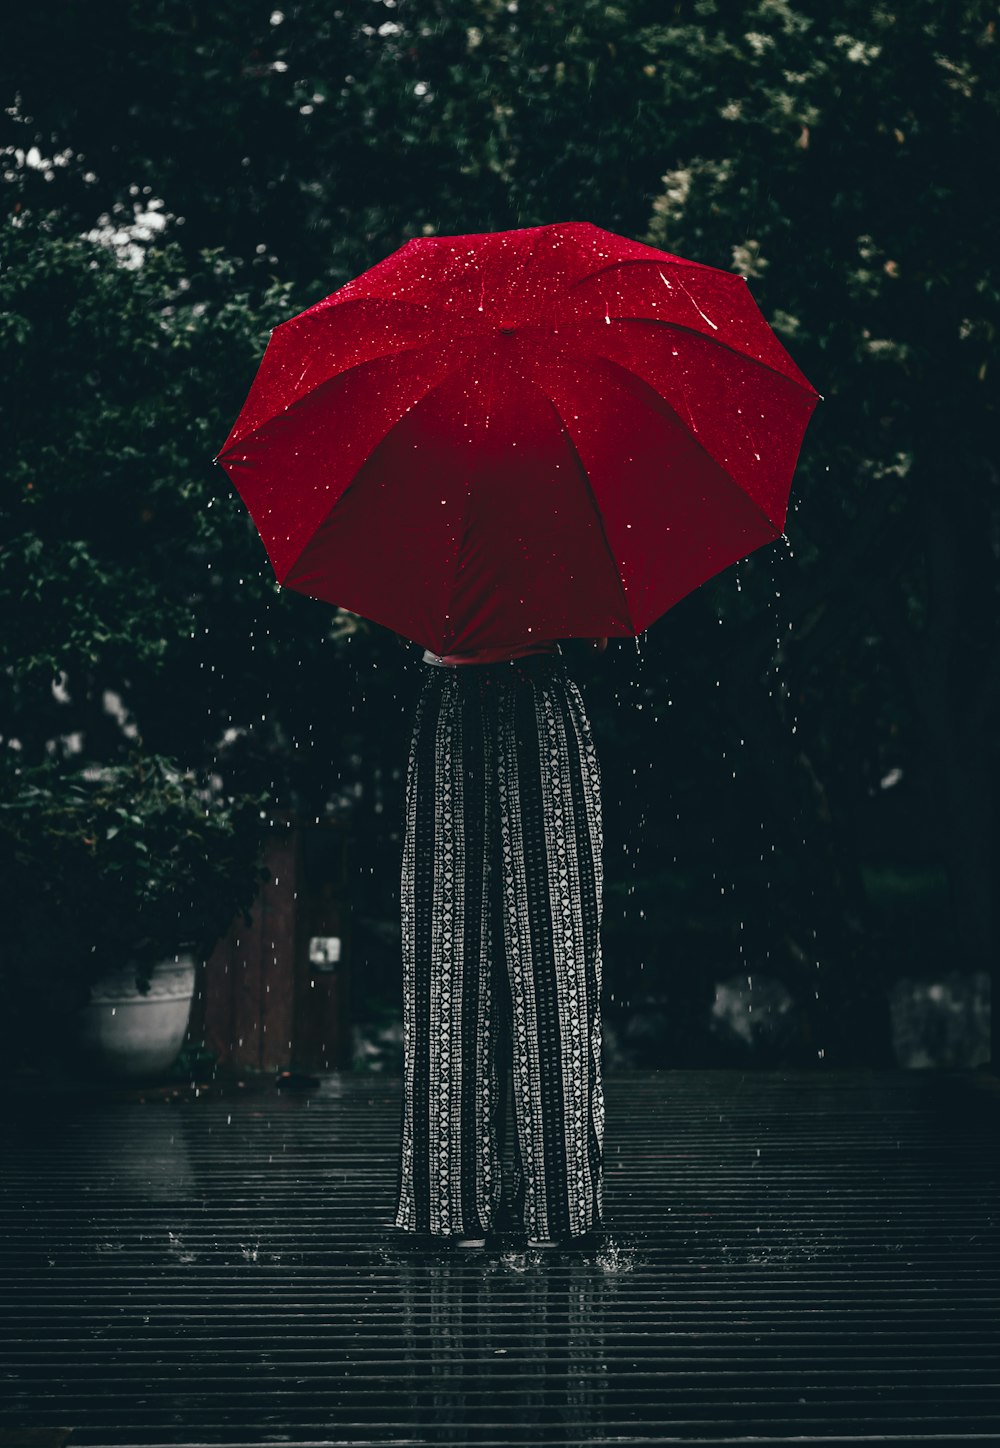 Frau mit rotem Regenschirm, die tagsüber in der Nähe eines Baumes steht